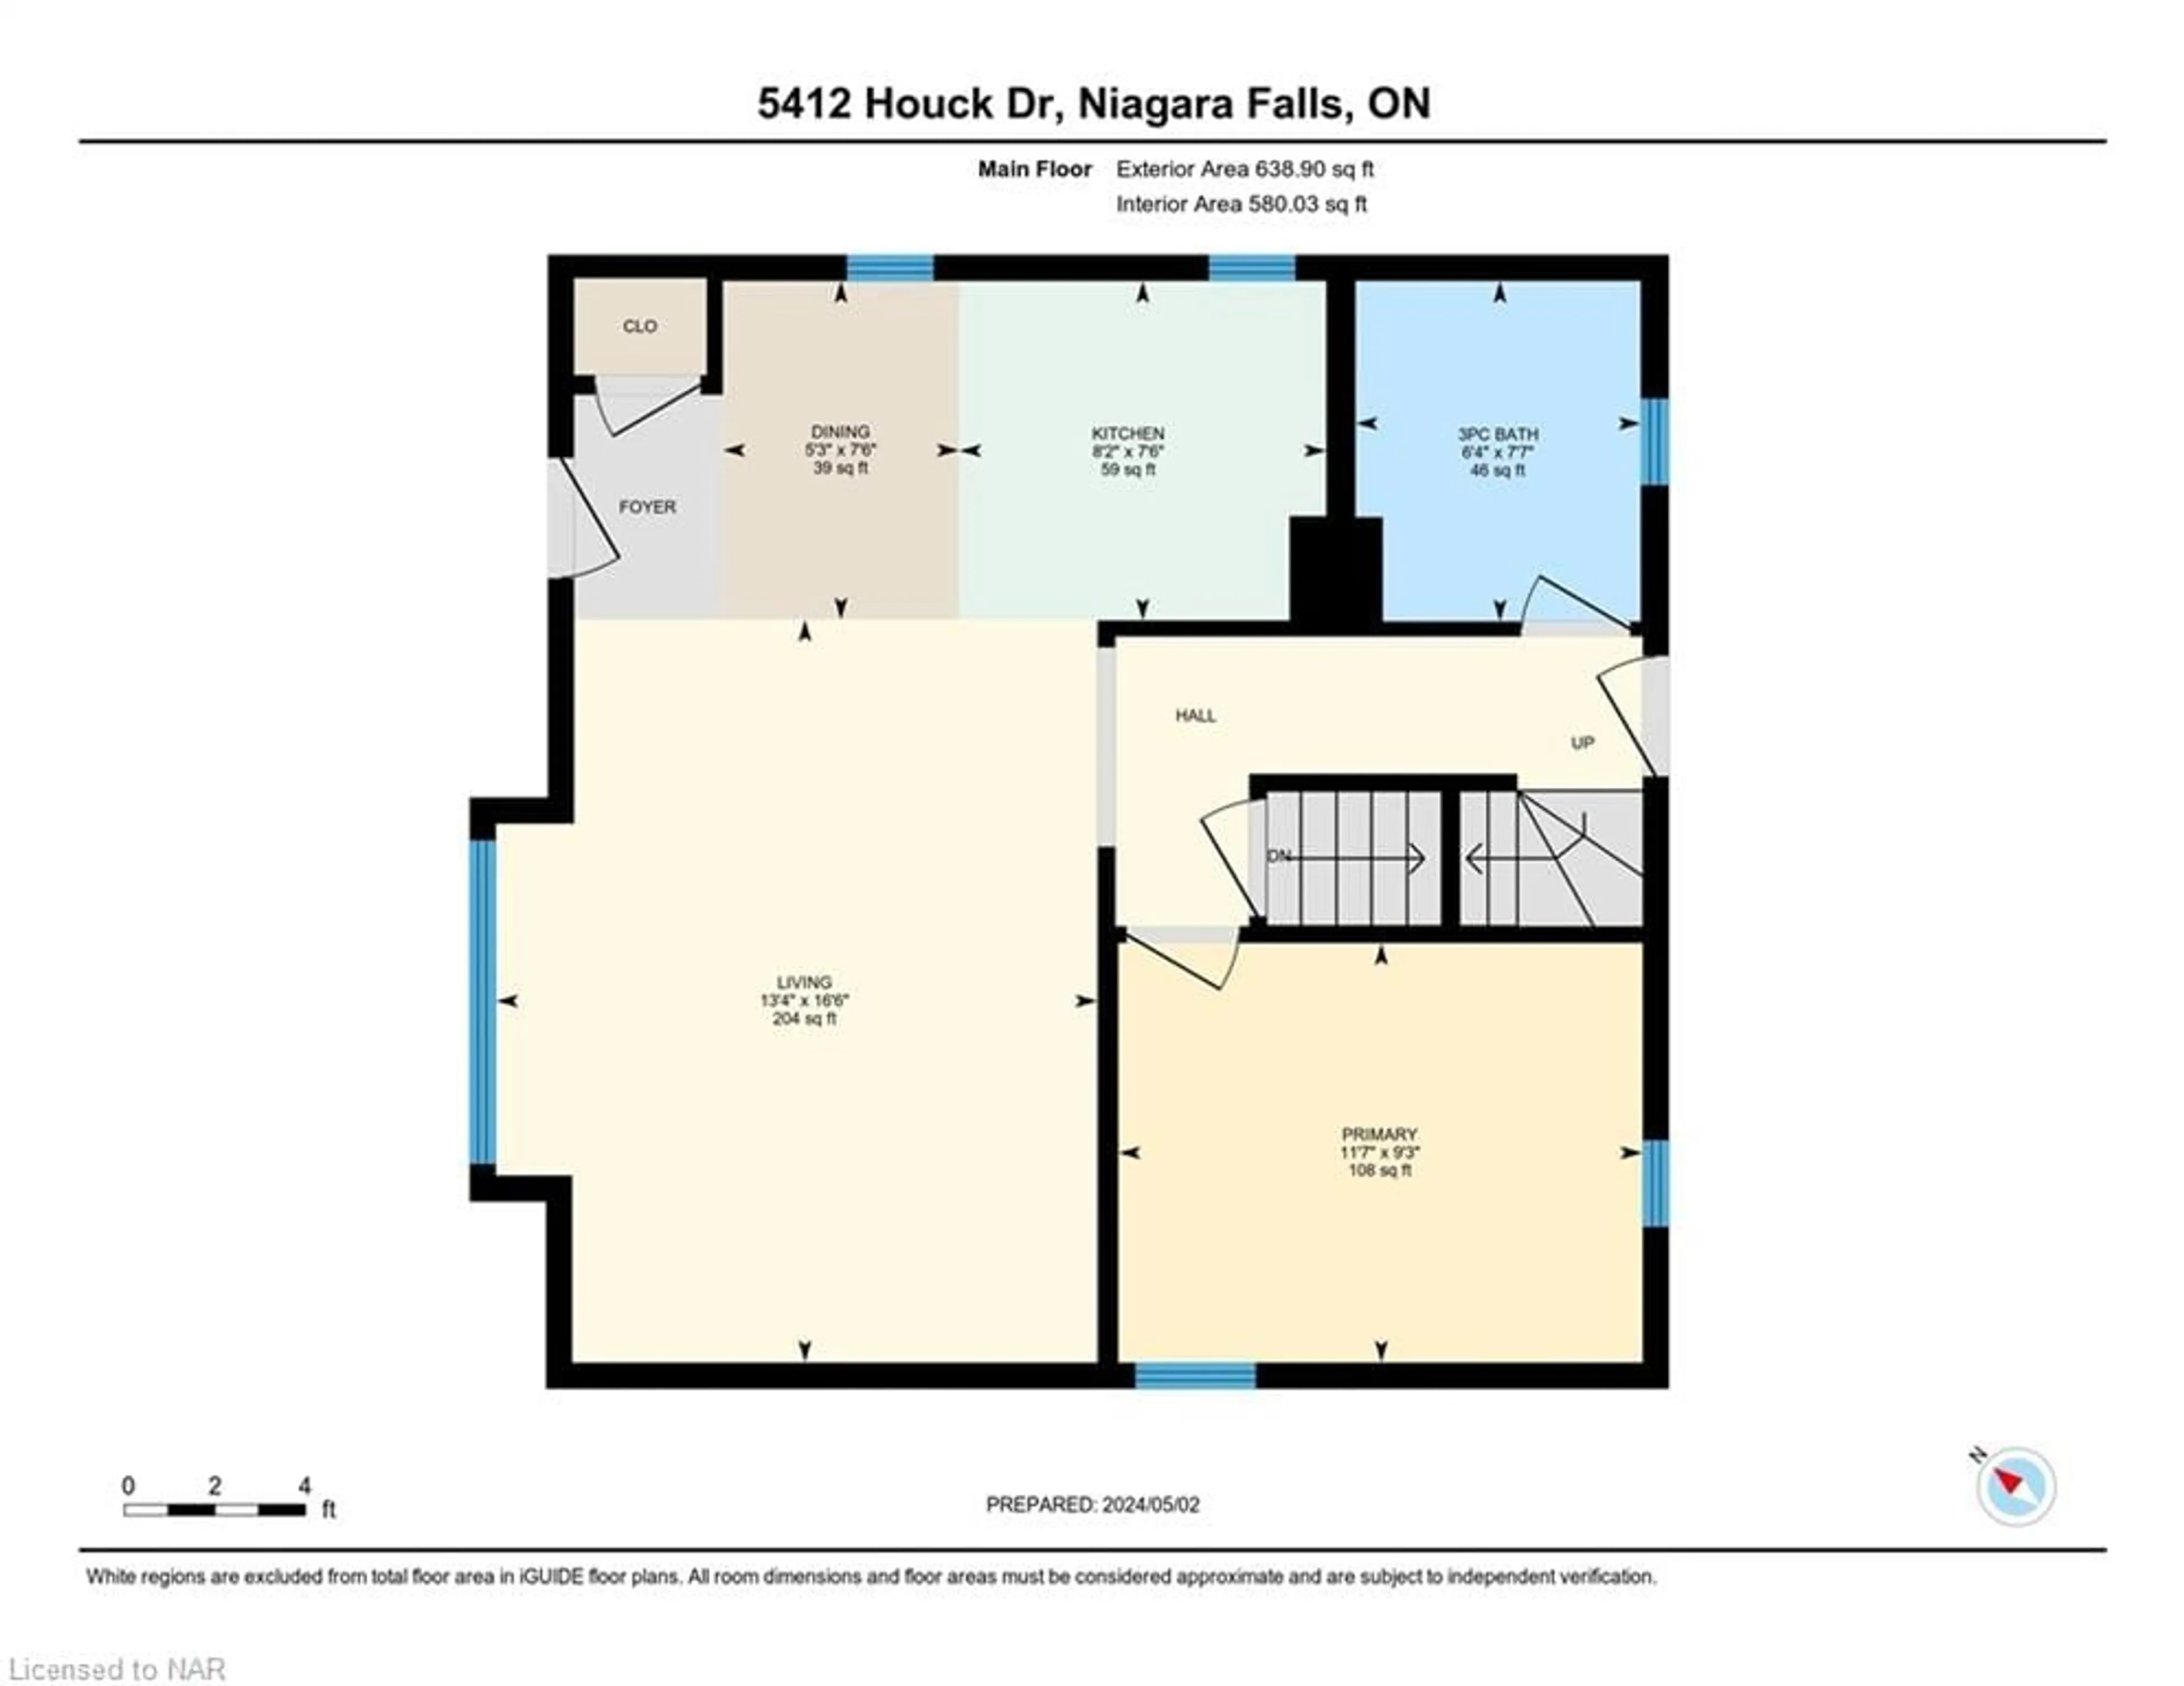 Floor plan for 5412 Houck Dr, Niagara Falls Ontario L2E 1S1